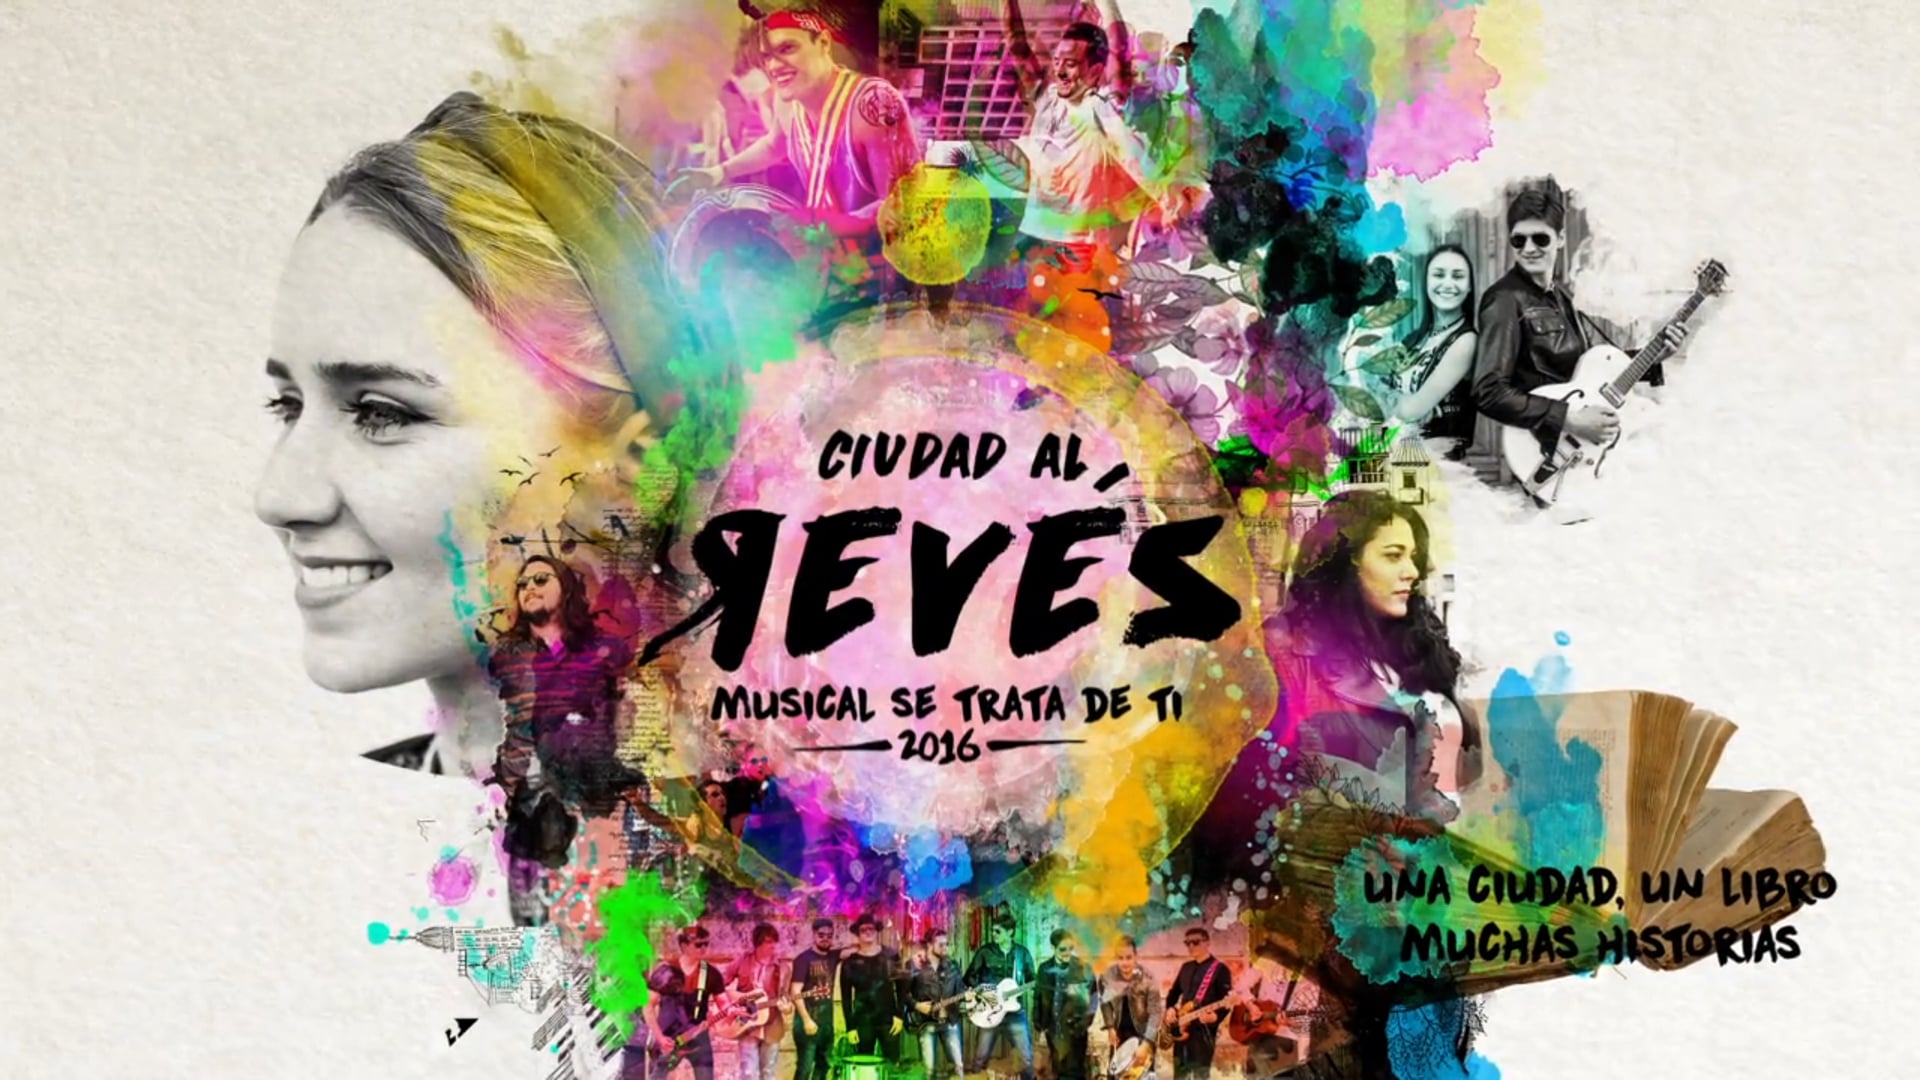 Musical Se Trata De Ti | "Ciudad Al Revés" (Spot)